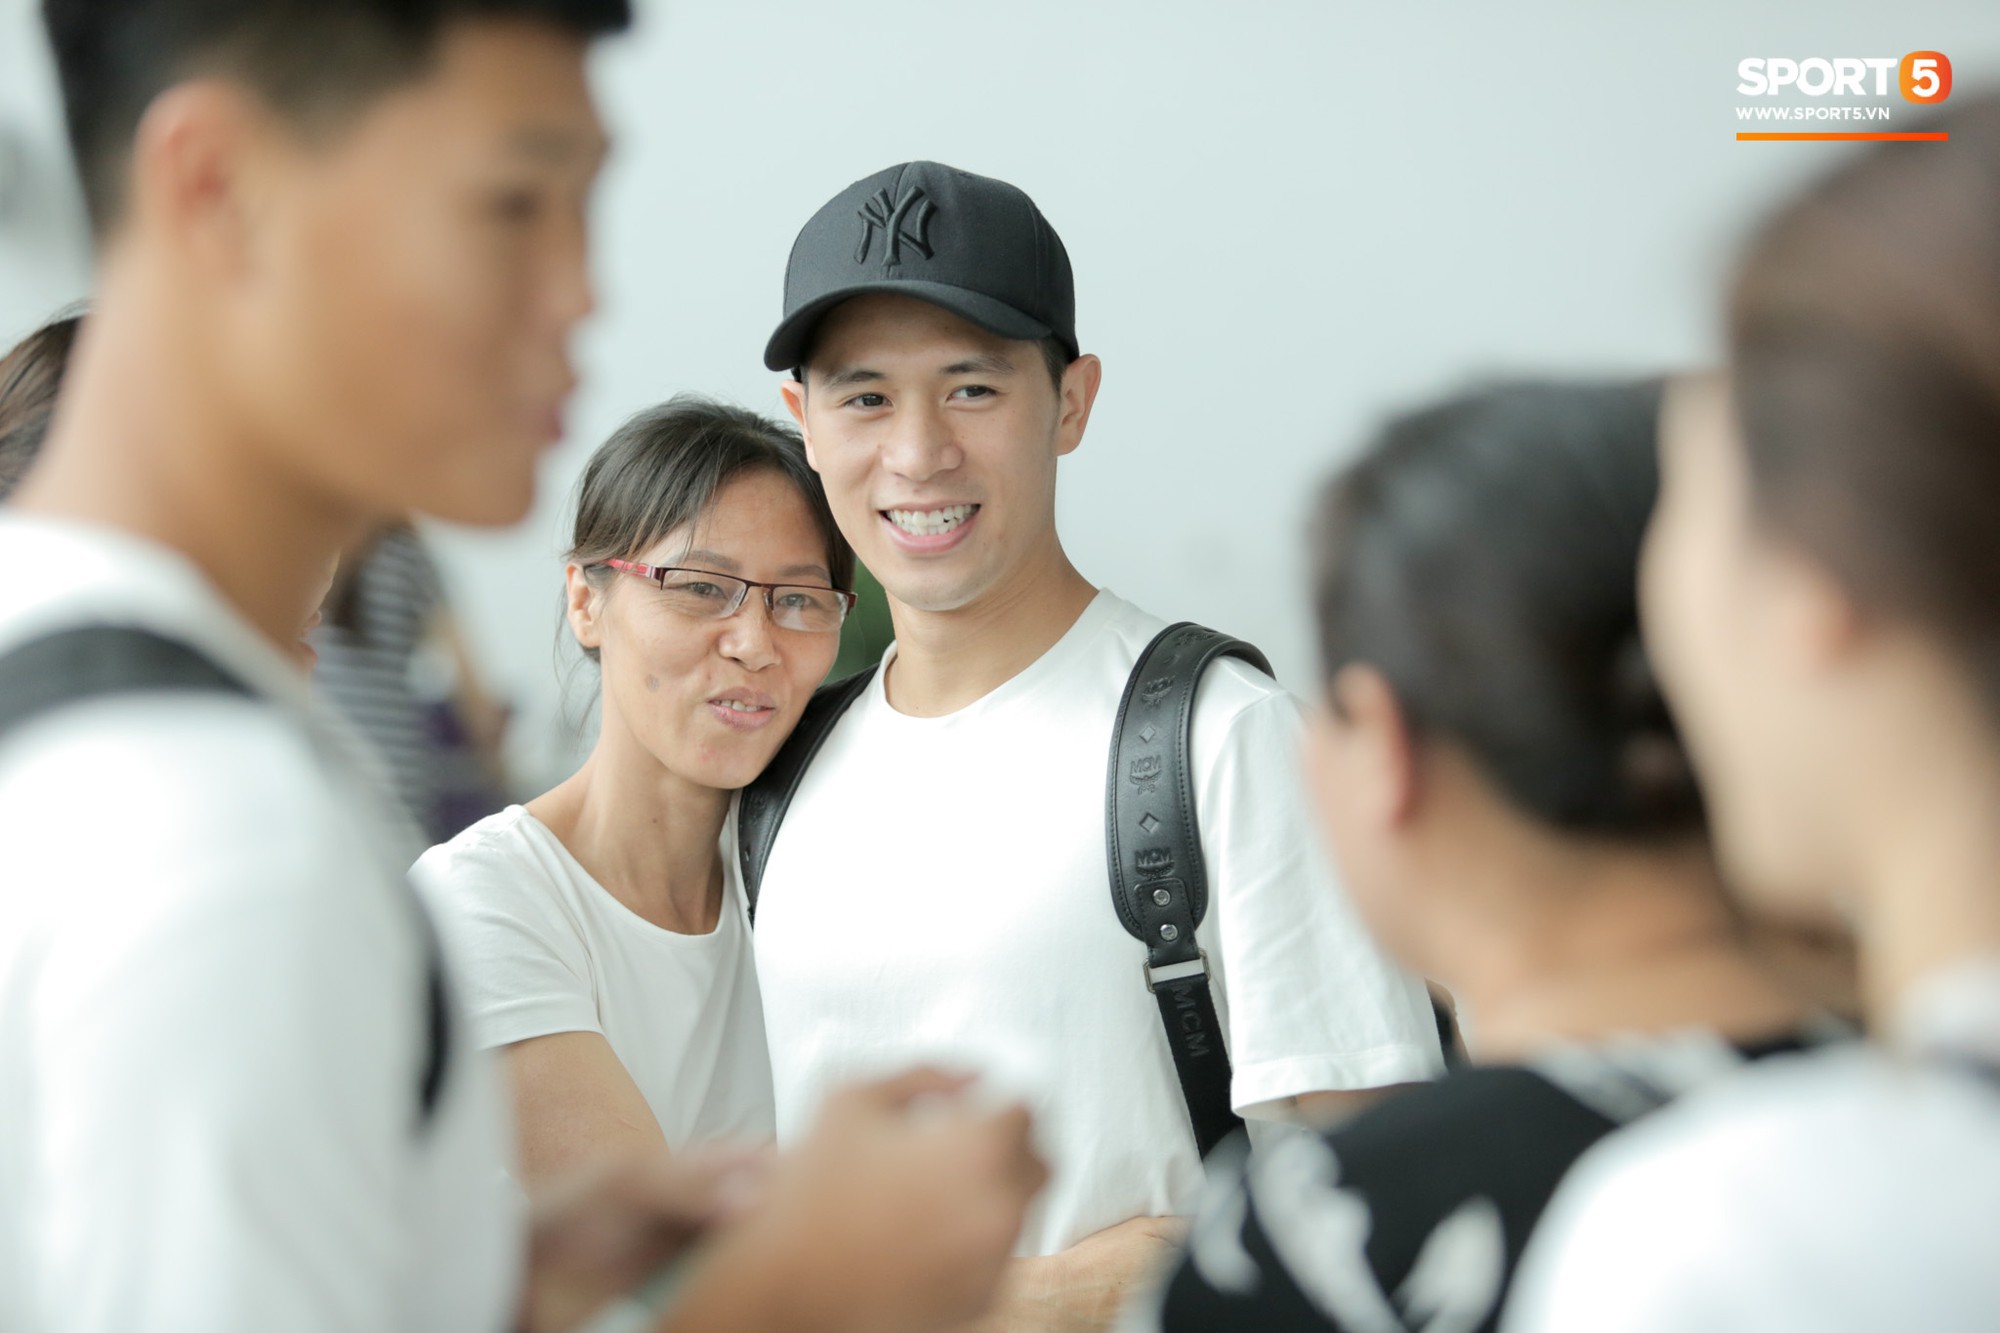 Mẹ Đình Trọng kìm nén nước mắt ở sân bay, nghẹn ngào khi tiễn con trai sang Singapore chữa trị - Ảnh 9.